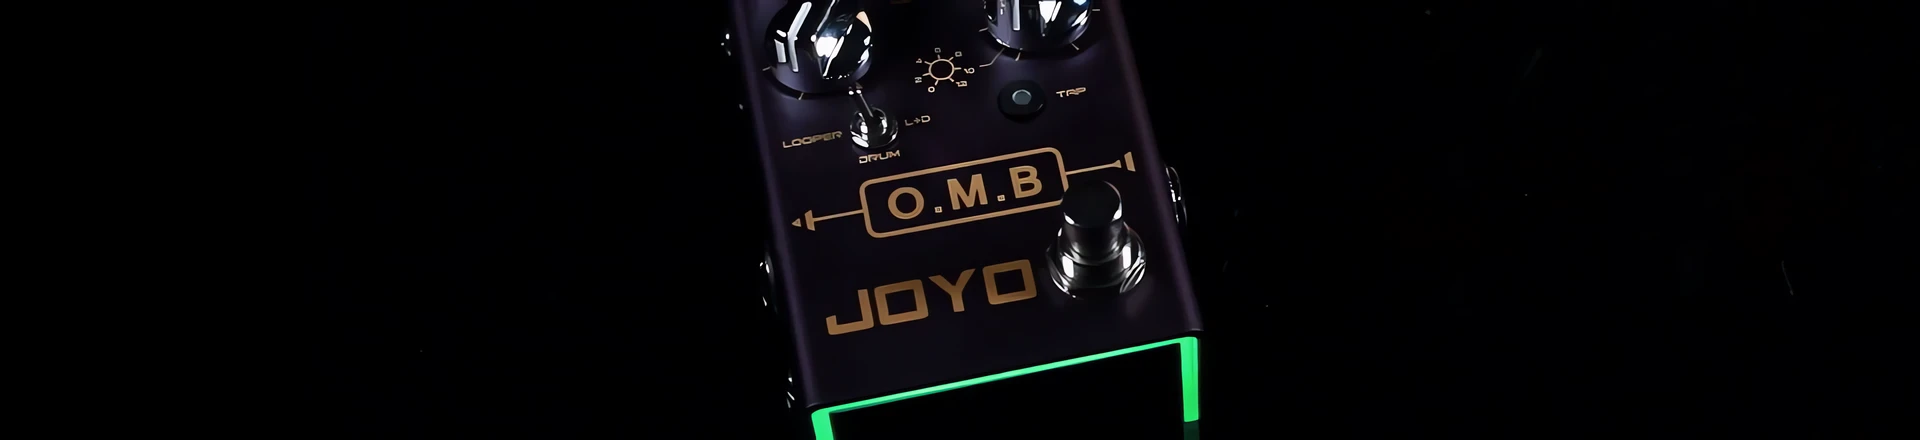 Kolejna nowość w serii R Joyo - nadchodzi looper O.M.B 